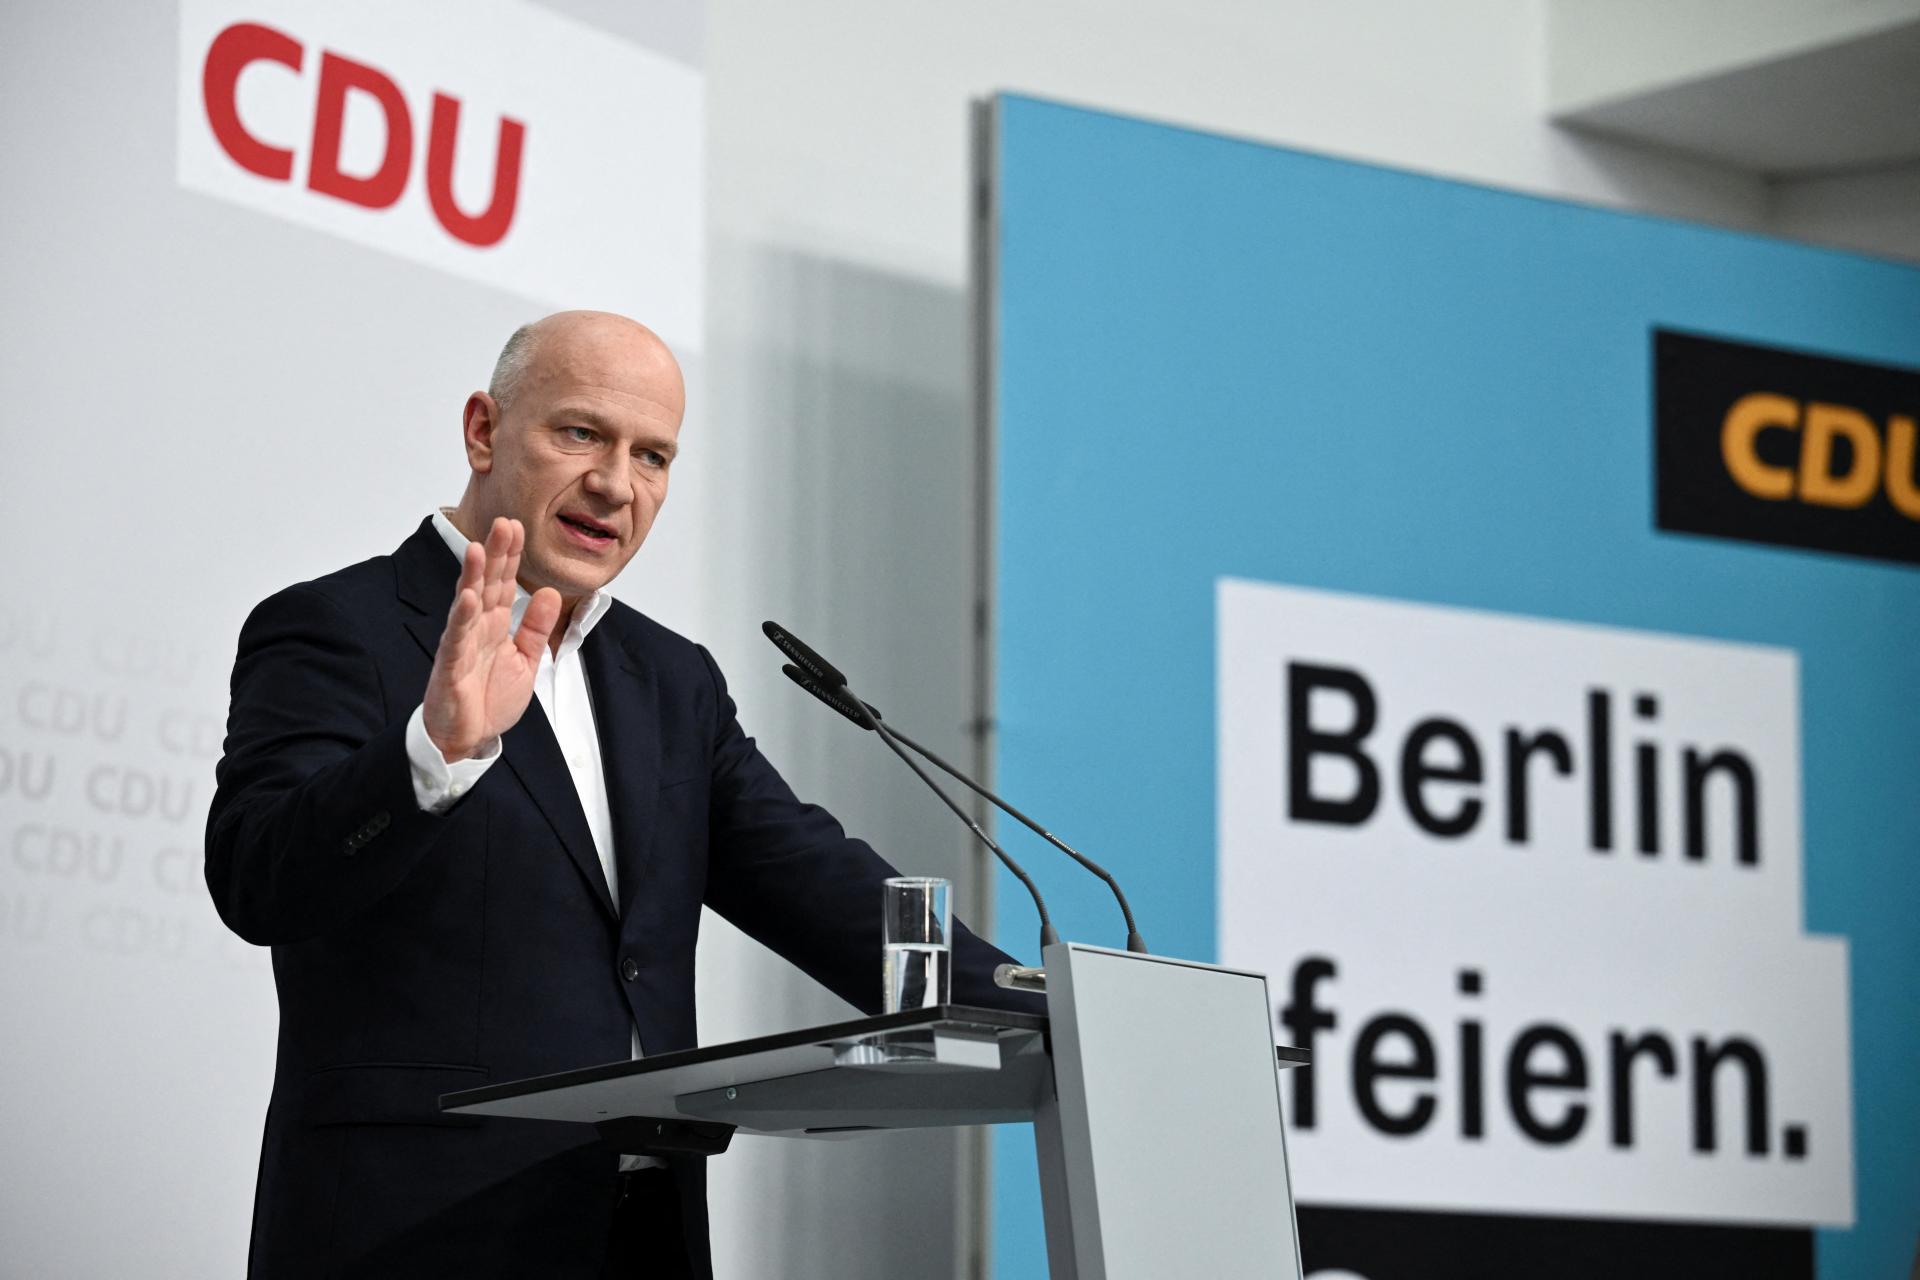 Berlín sa priblížil k regionálnej vláde sociálnych demokratov a konzervatívcov, podporil začatie rokovaní